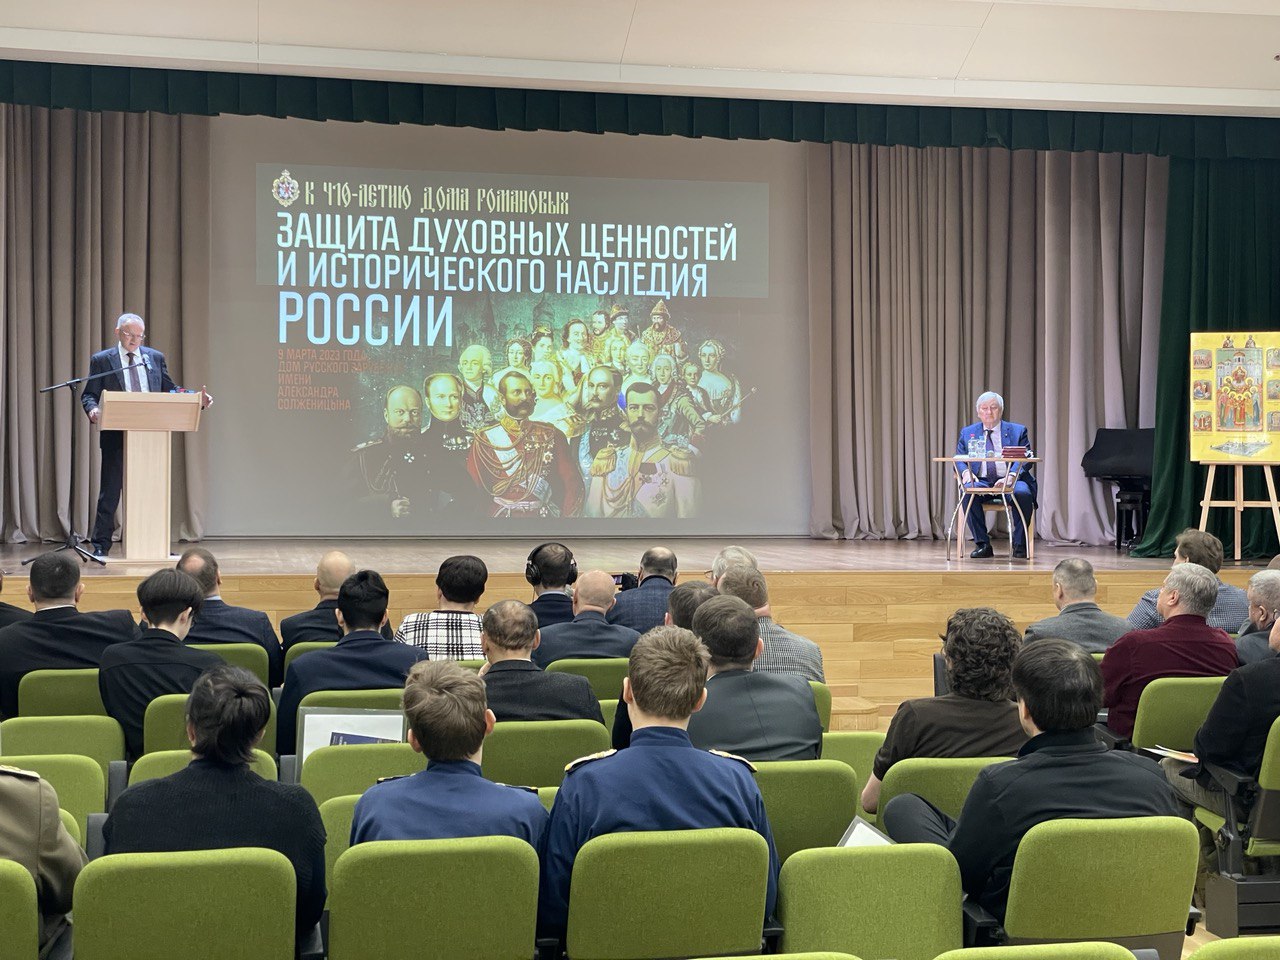 В Москве прошла научно-практическая конференция *Защита духовных ценностей и исторического наследия России*